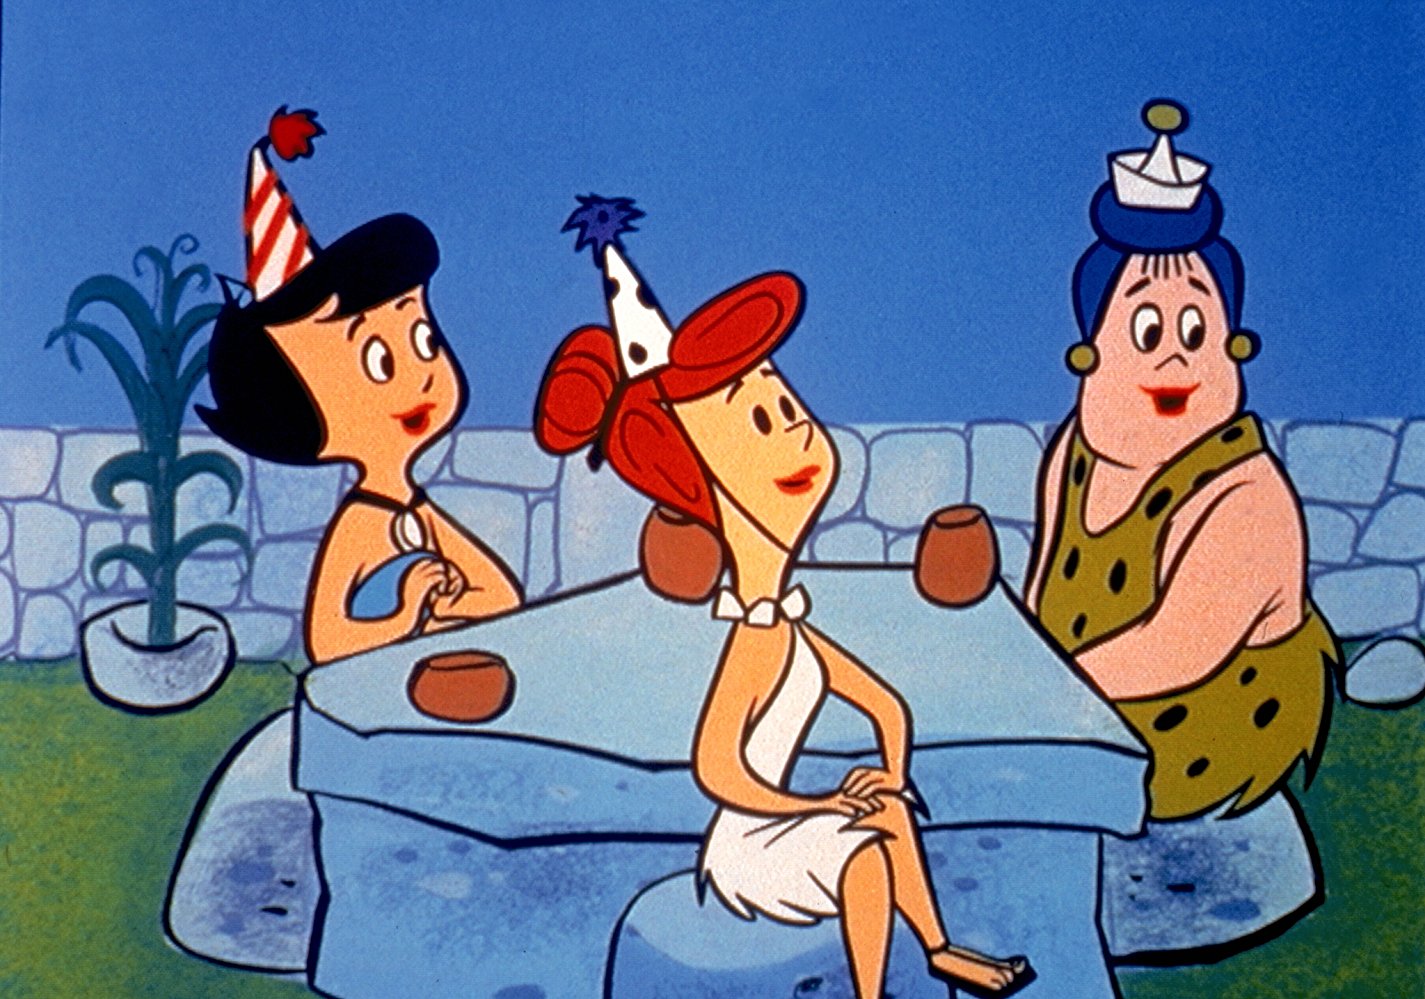 Wilma Flintstone is the wife of Fred Flintstone. 